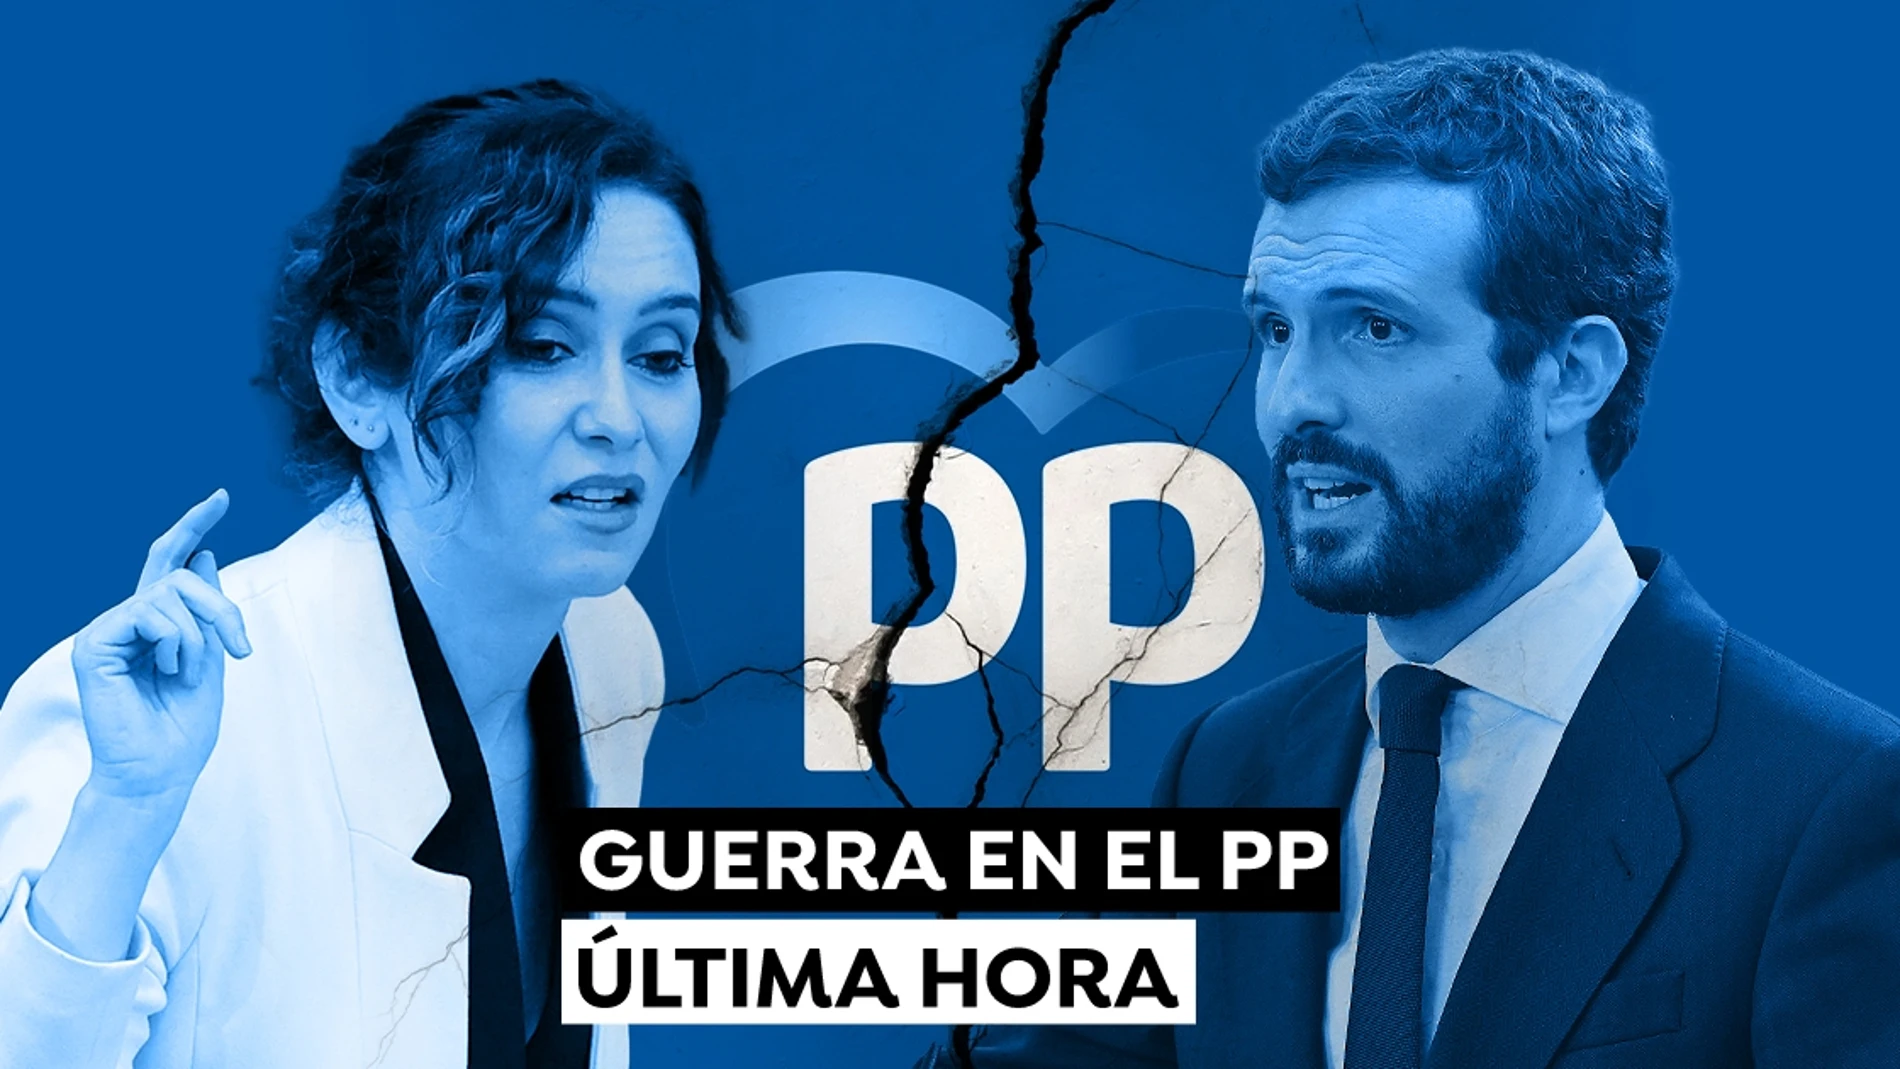 Isabel Díaz Ayuso y Pablo Casado: Dimisiones y última hora de la crisis del PP hoy